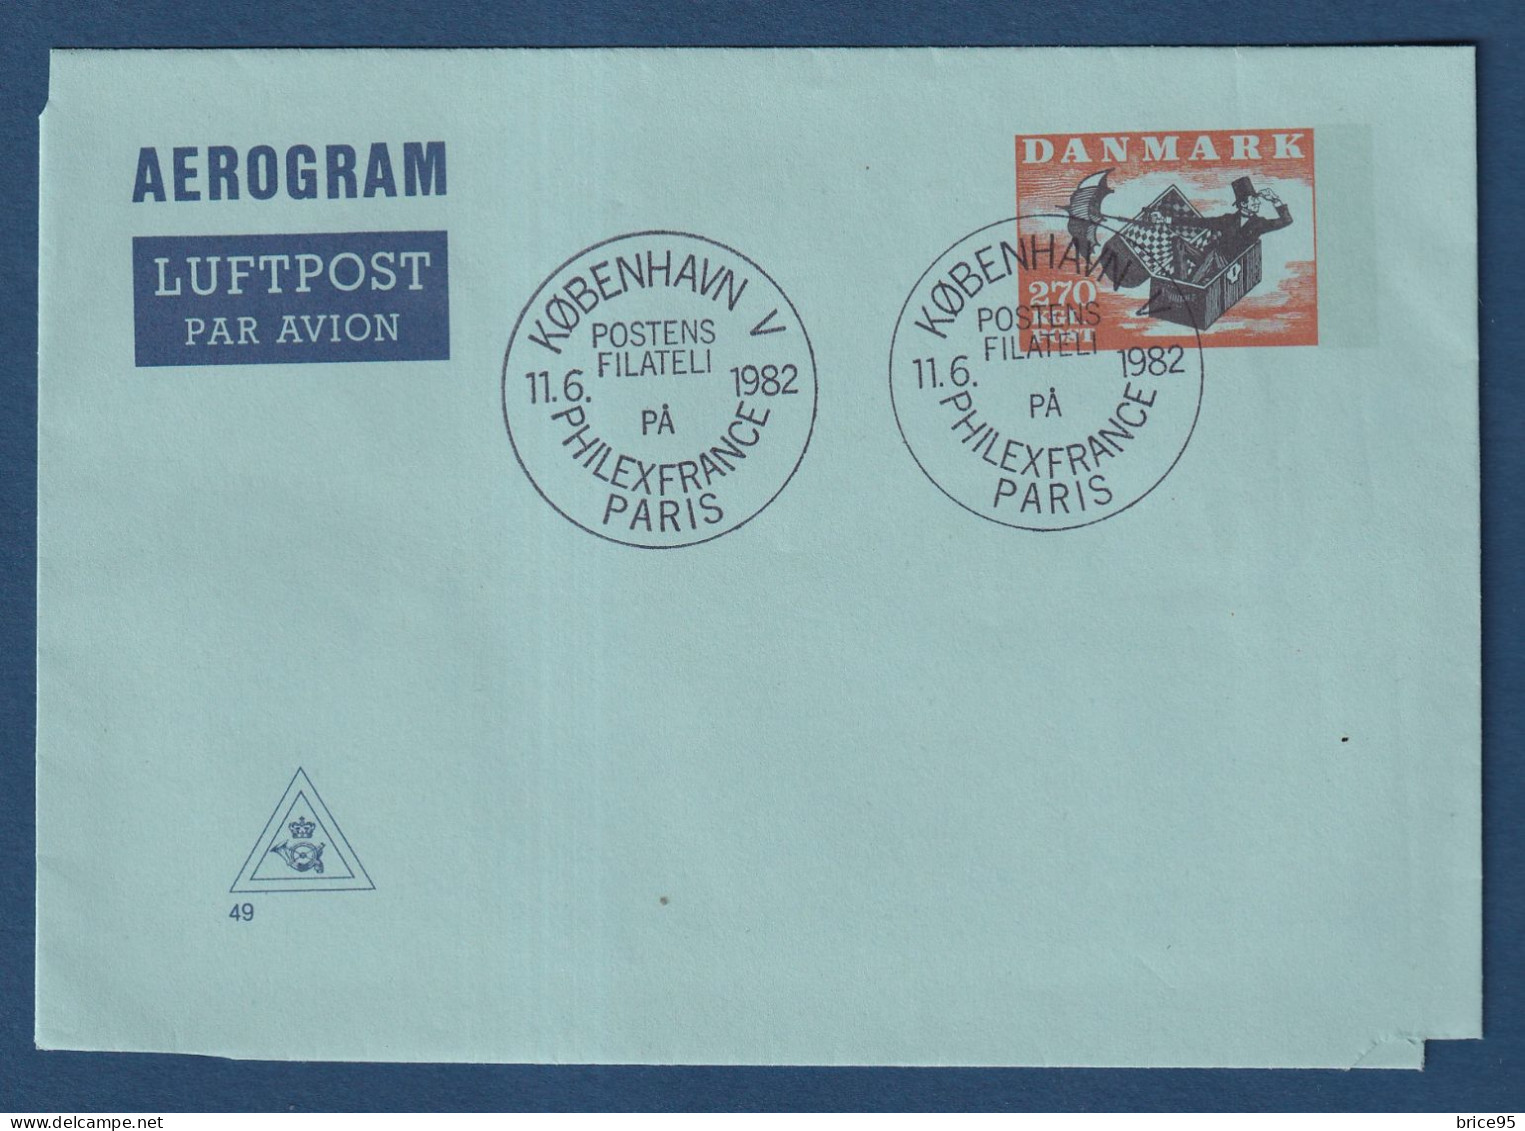 Danemark - FDC - Premier Jour - Aérogramme - PhilexFrance 82 - 1982 - Airmail